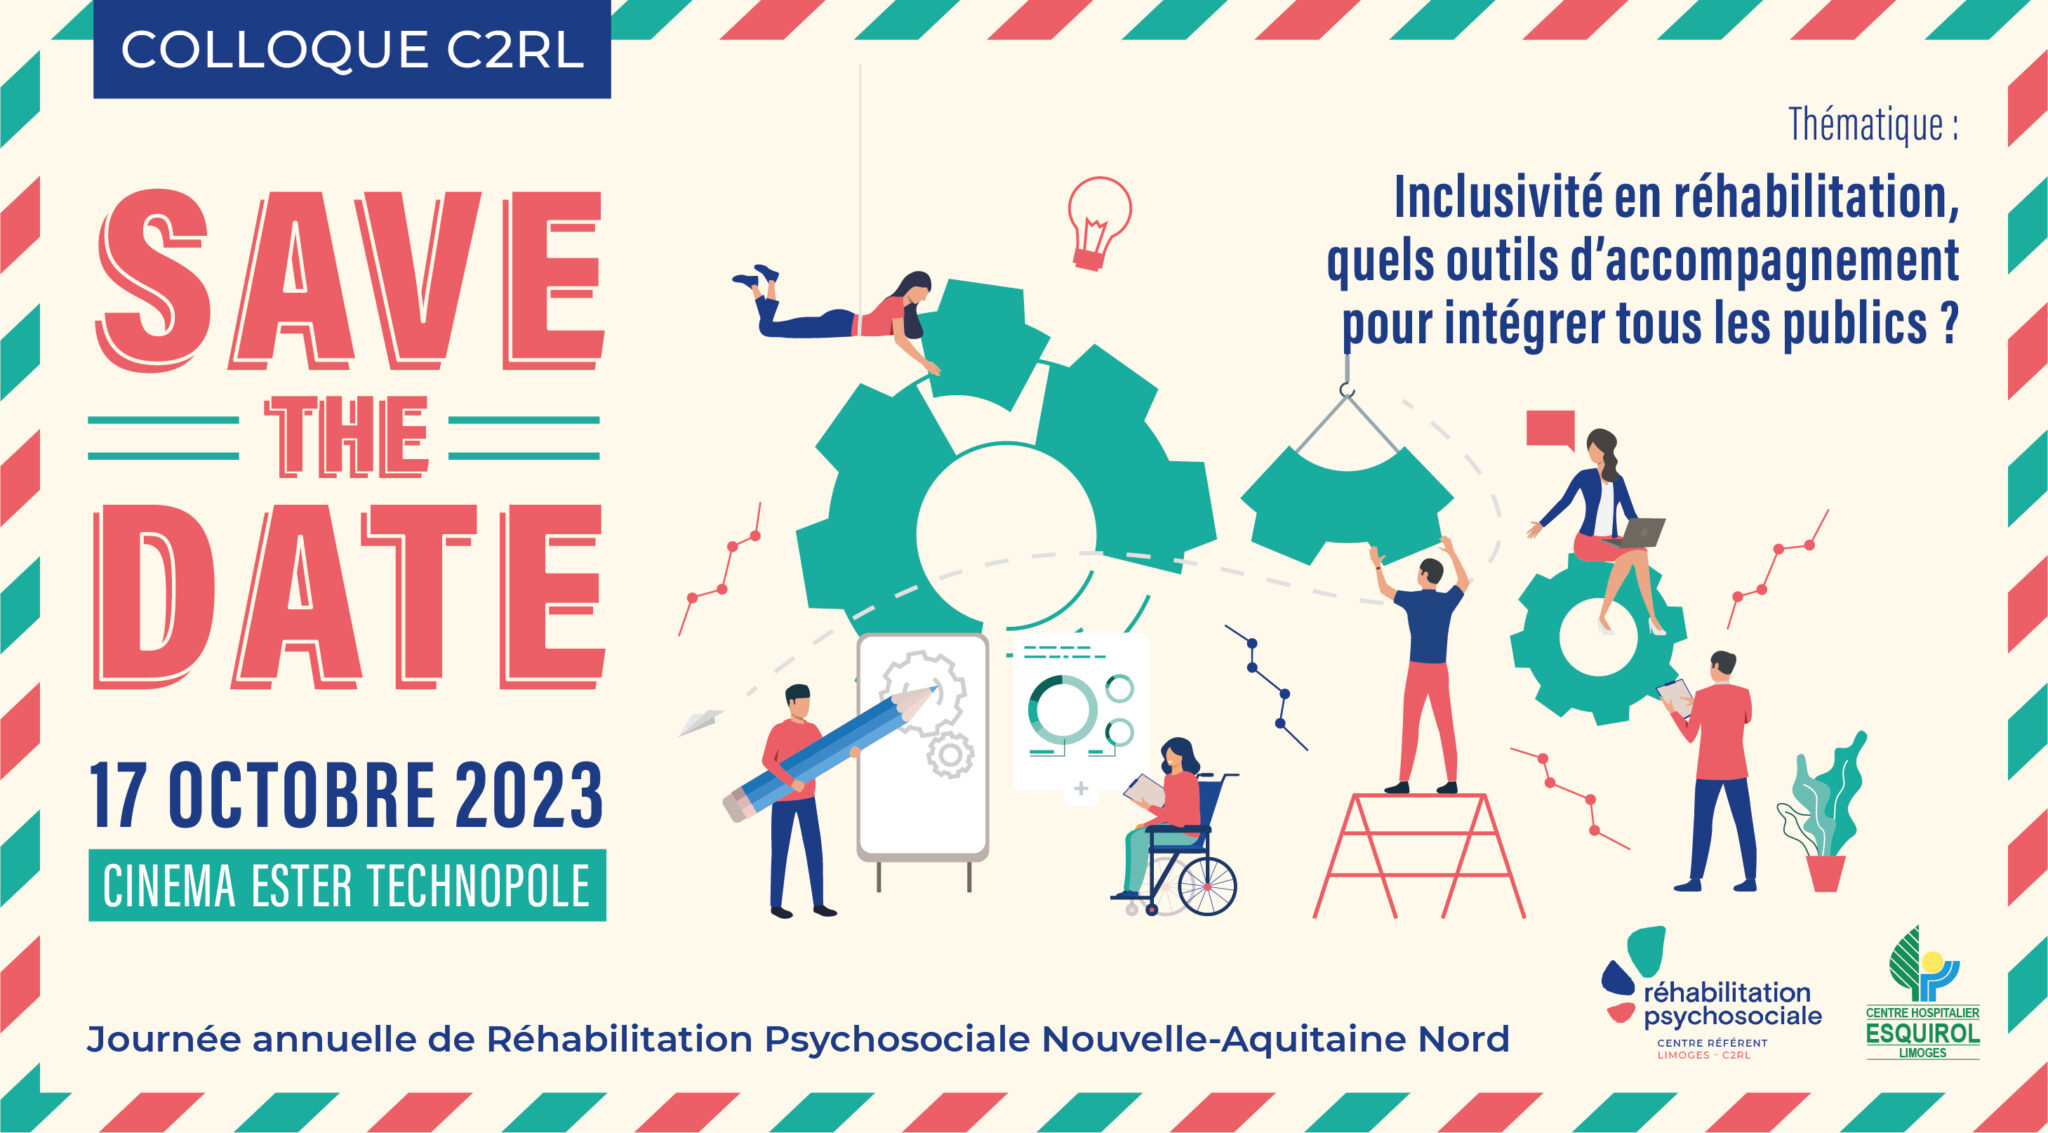 Save the date - colloque inclusivité en réhabilitation psychosociale